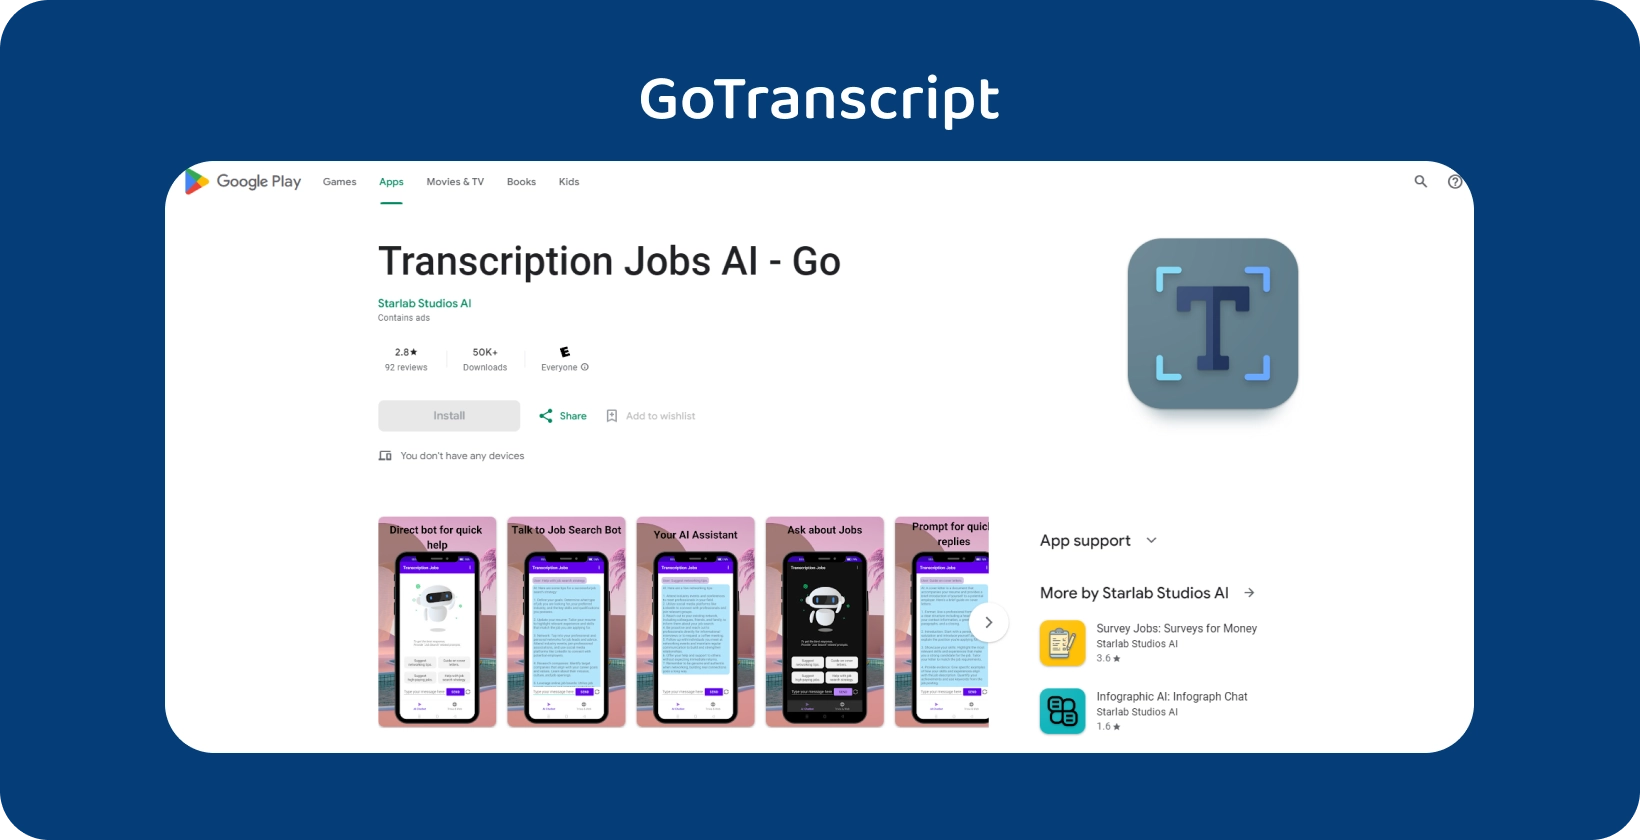 แอป GoTranscript บน Google Play ซึ่งออกแบบมาสําหรับจัดการงานการถอดความด้วยอินเทอร์เฟซมือถือที่ใช้งานง่าย